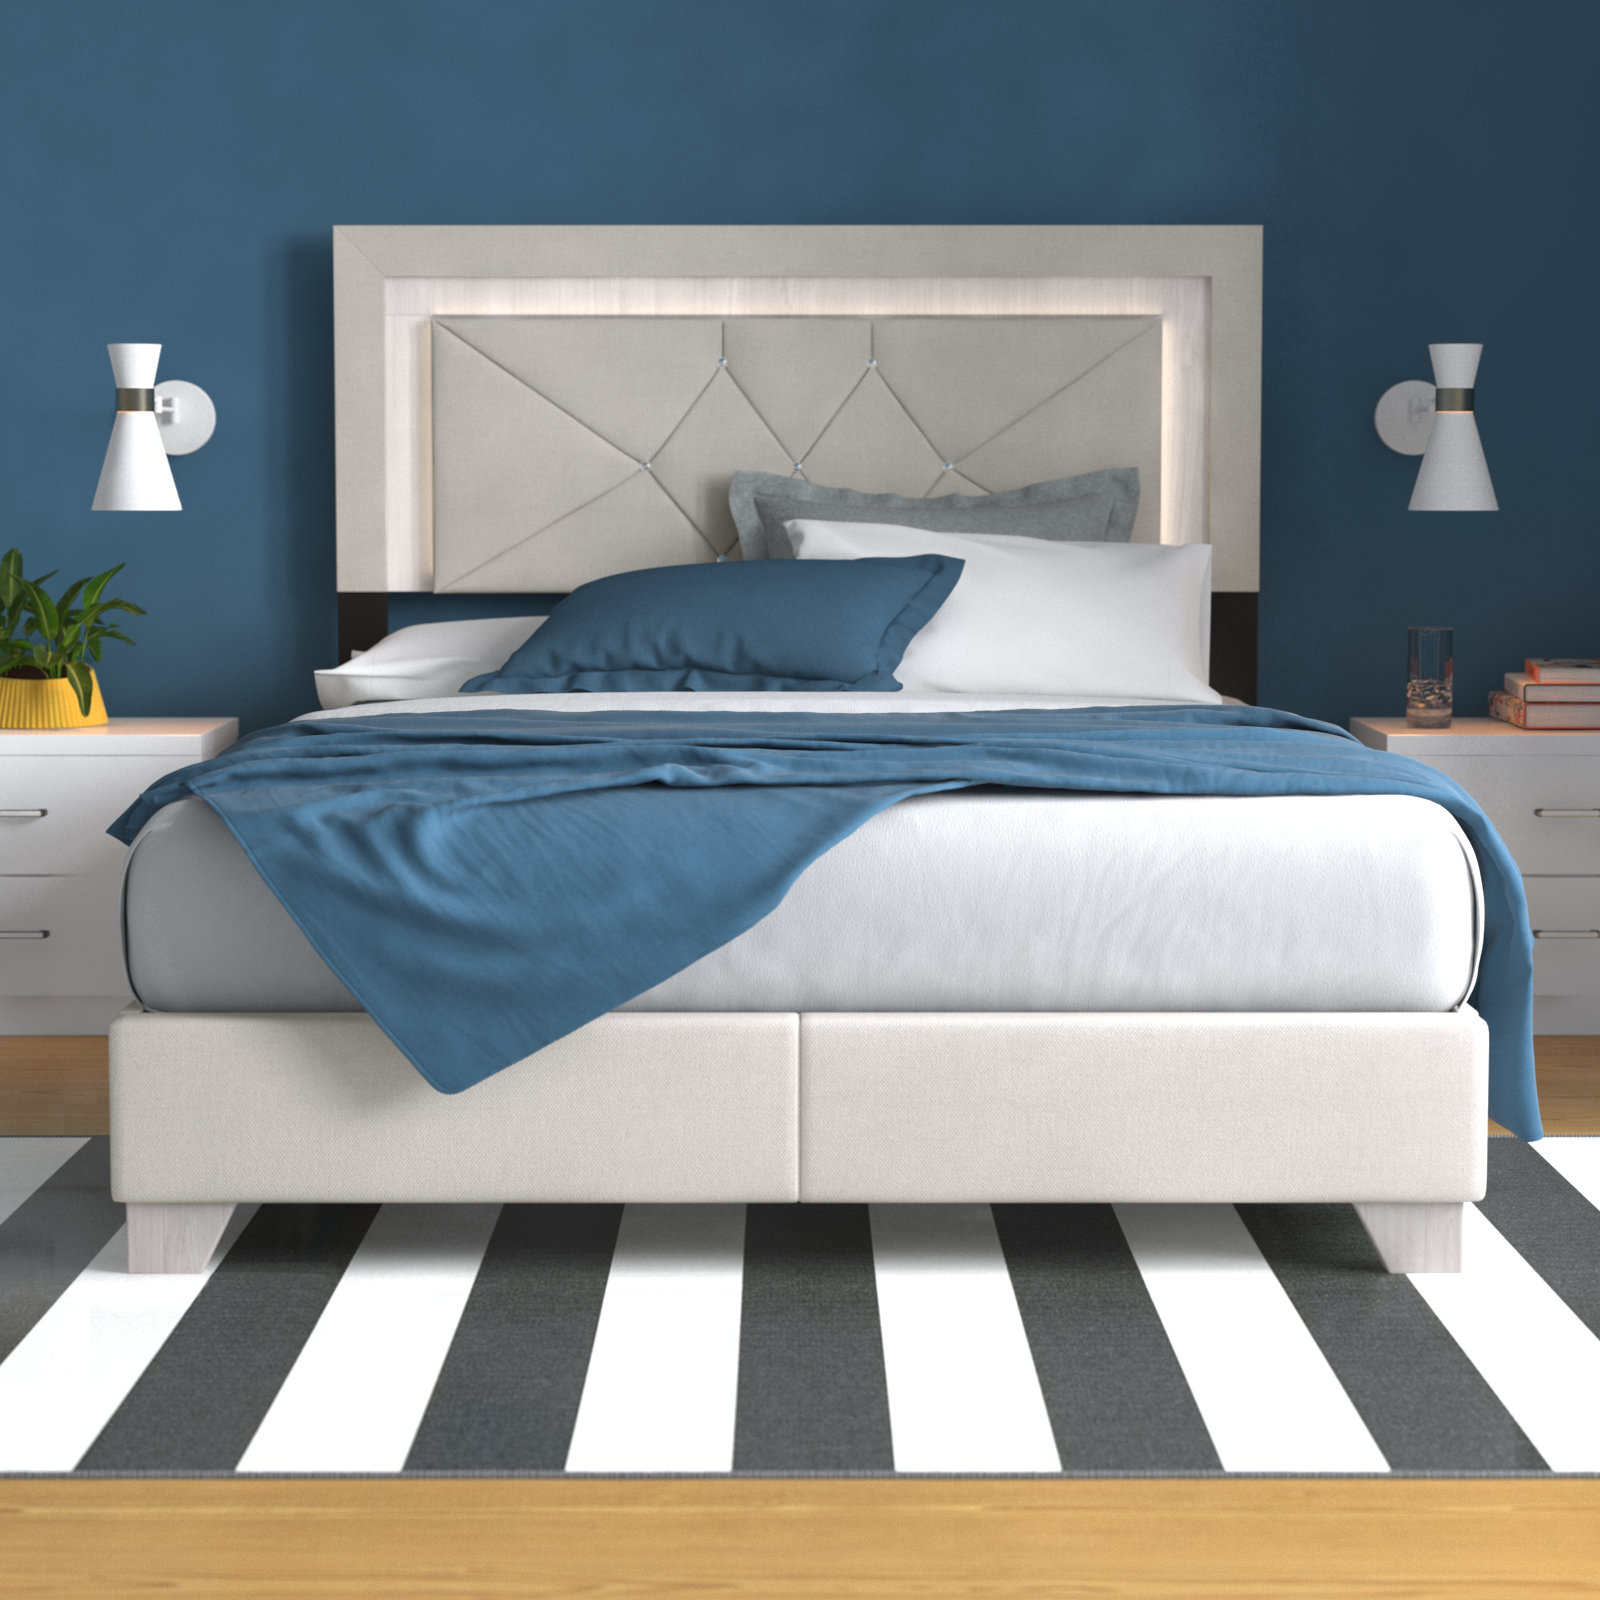 28 Bed back cushion ideas  bedroom bed design, bed design, bed headboard  design